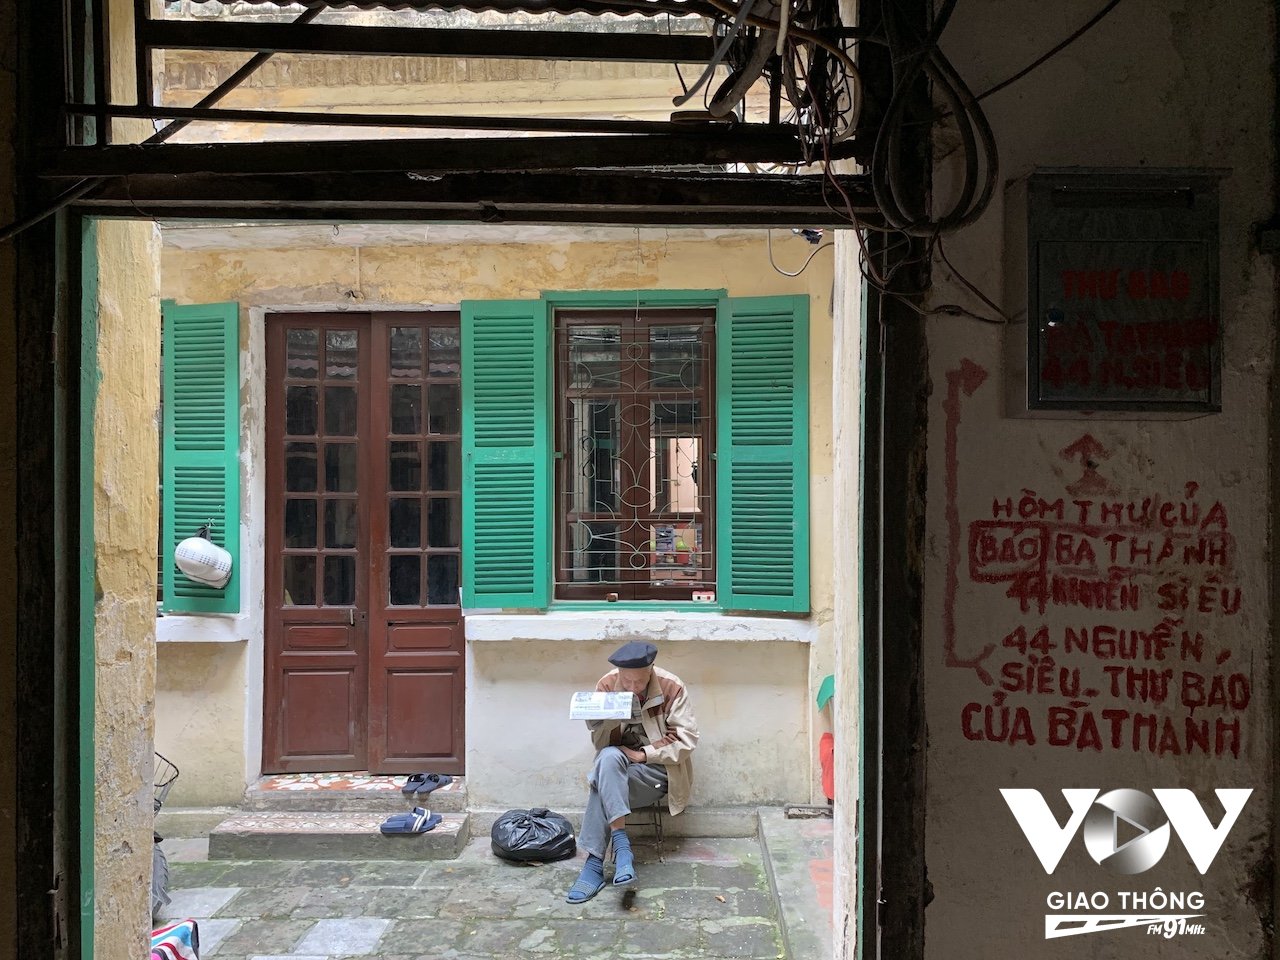 Hình ảnh bình dị trong sân một ngôi biệt thự cổ trên phố Nguyễn Siêu